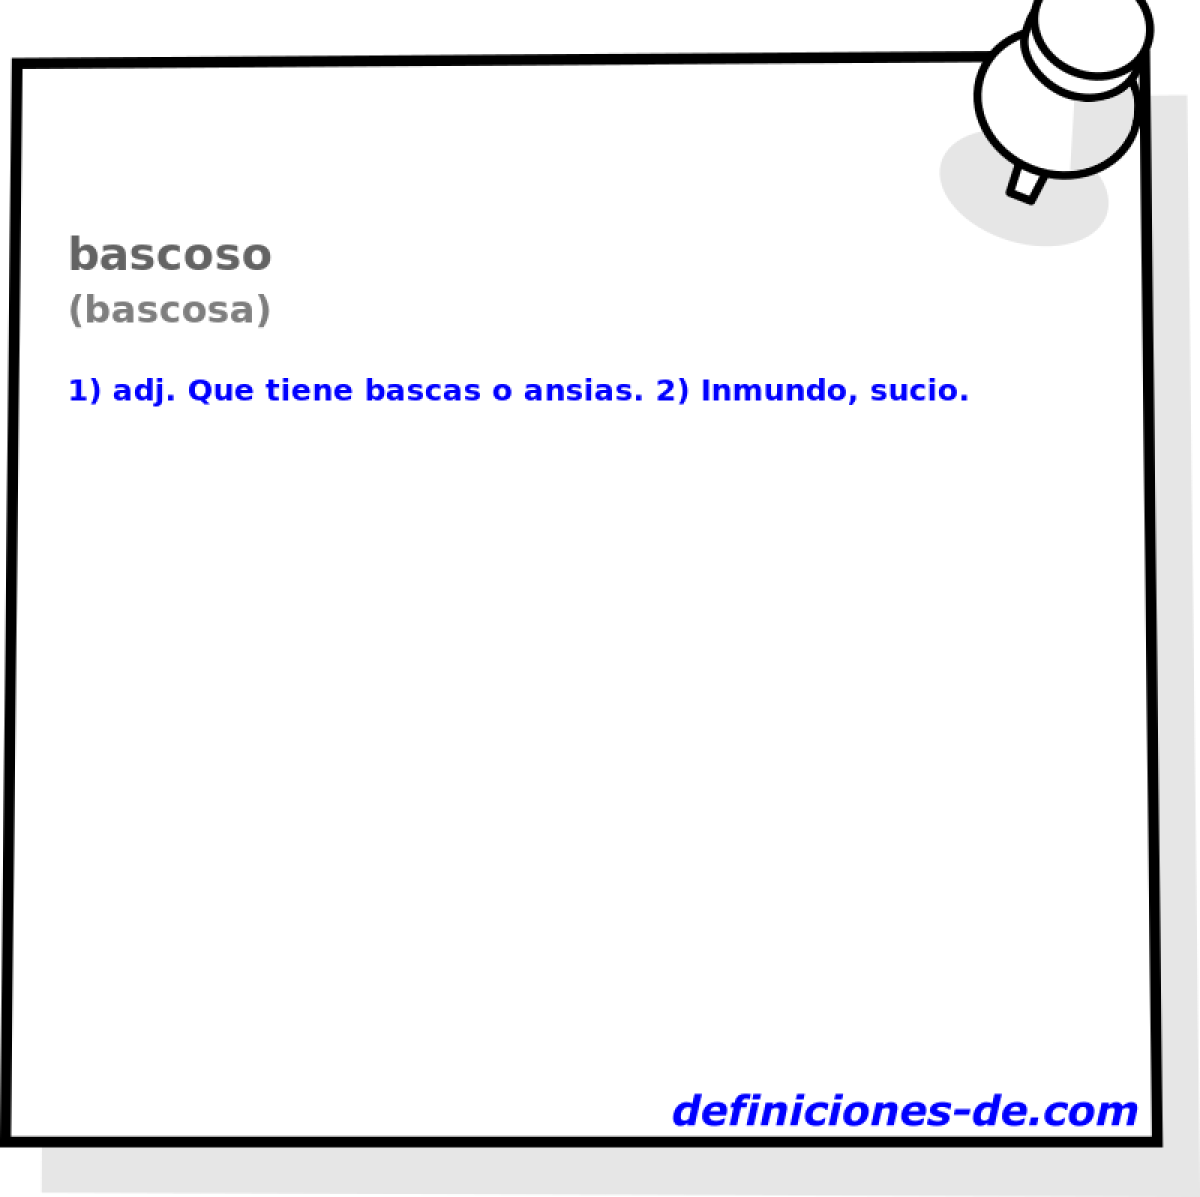 bascoso (bascosa)